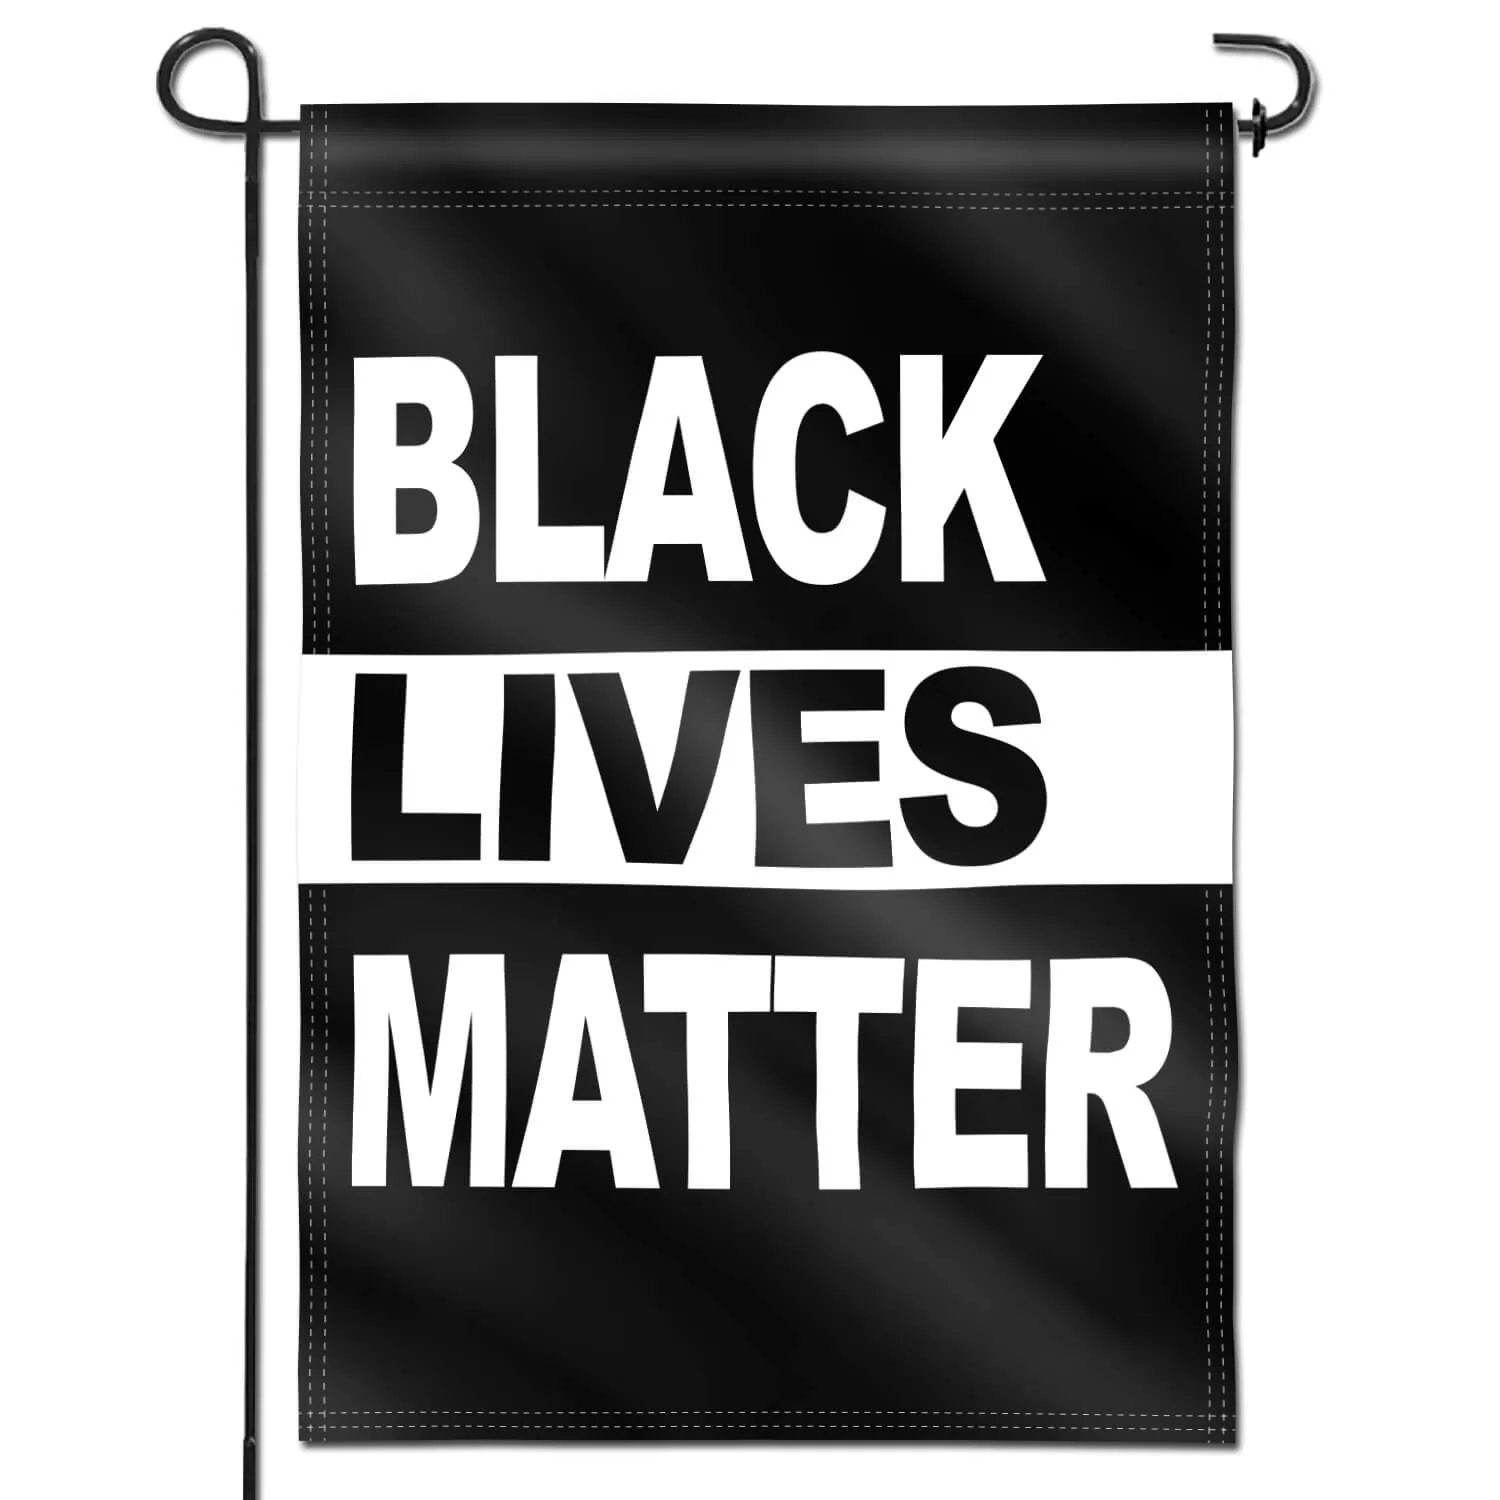 Homissor Black Lives Matter BLM Decorative Garden Flags – 18 x 12.5 Inch